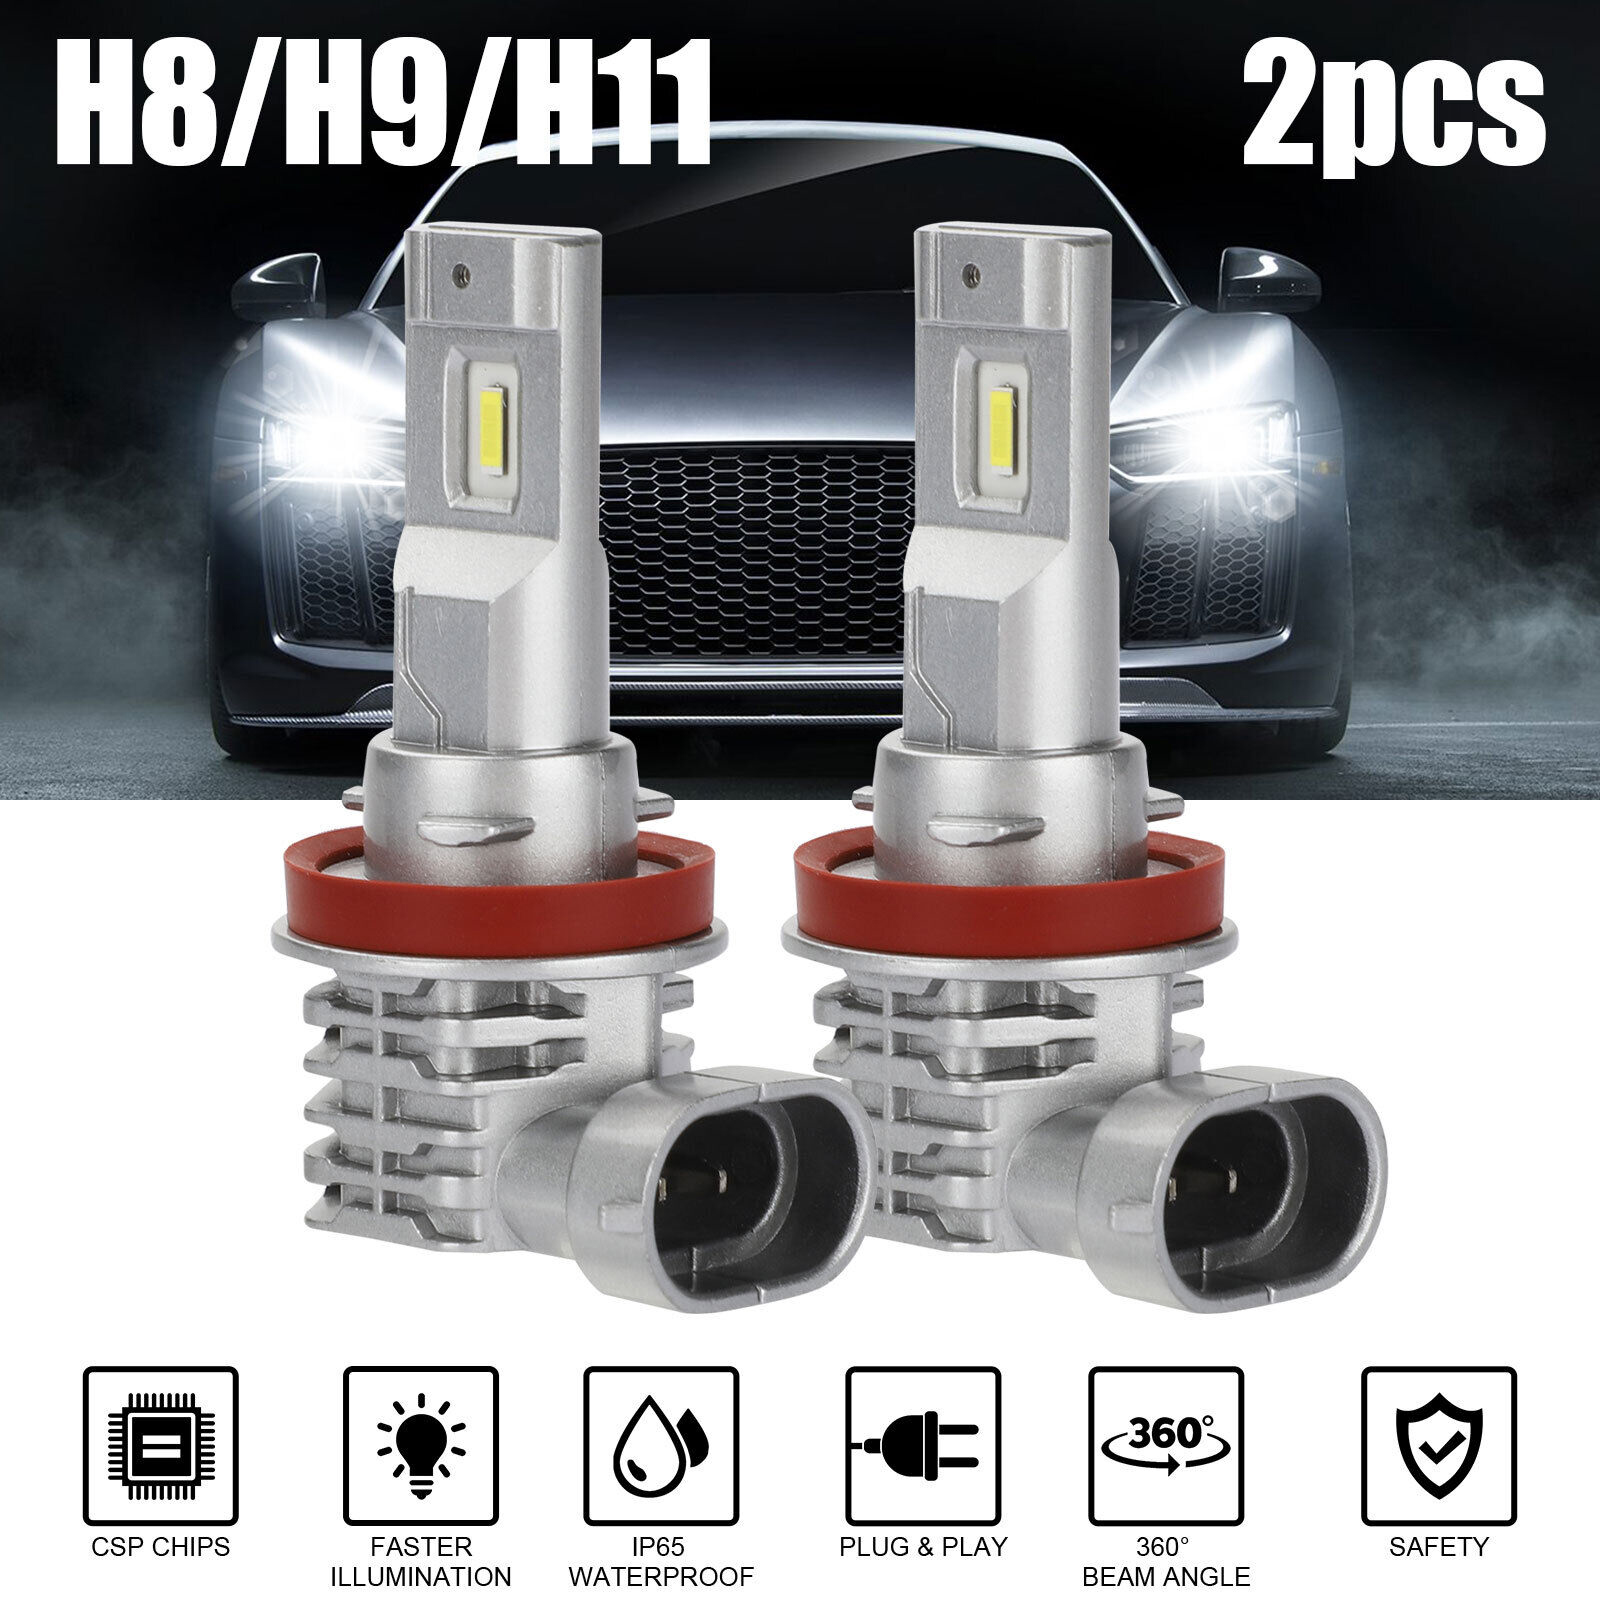 2pcs Car Led Headlight Kit H11 H9 H8 Super Bright Fog Lamp Daytime Running Light Bulbs 6000k White Waterproof silver